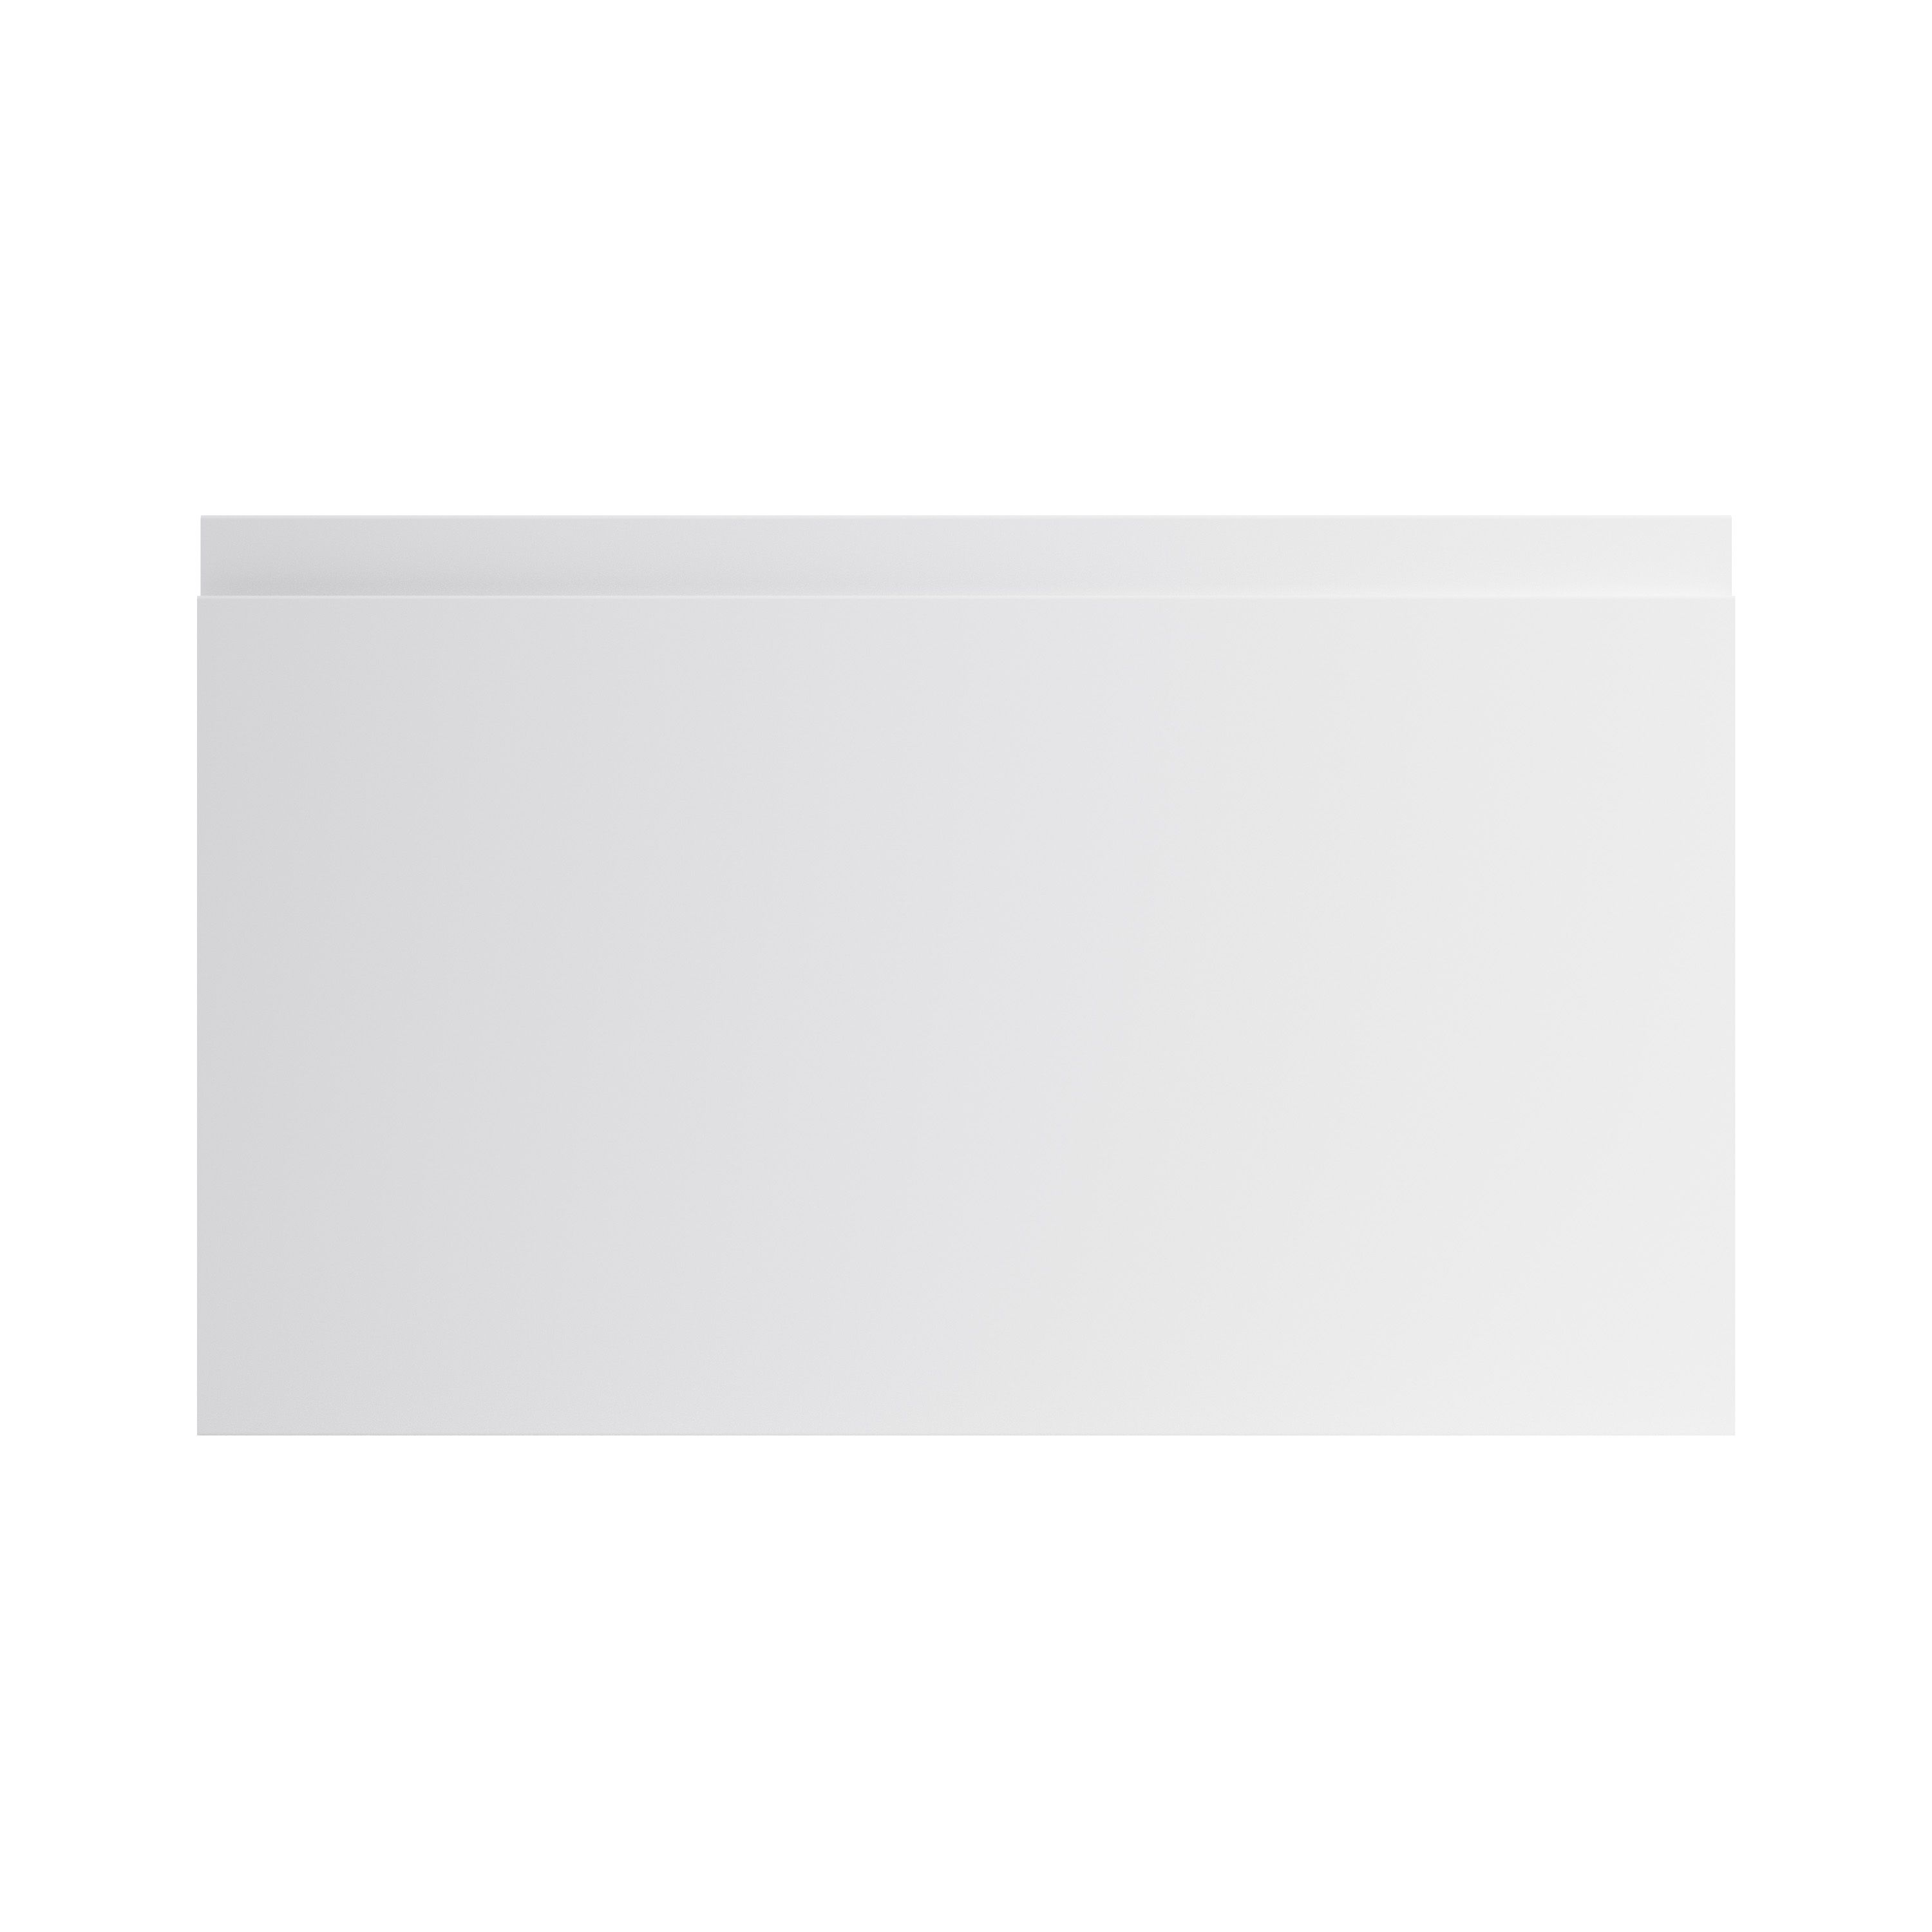 GoodHome Garcinia Gloss light grey Drawer front, bridging door & bi fold door, (W)600mm (H)356mm (T)19mm